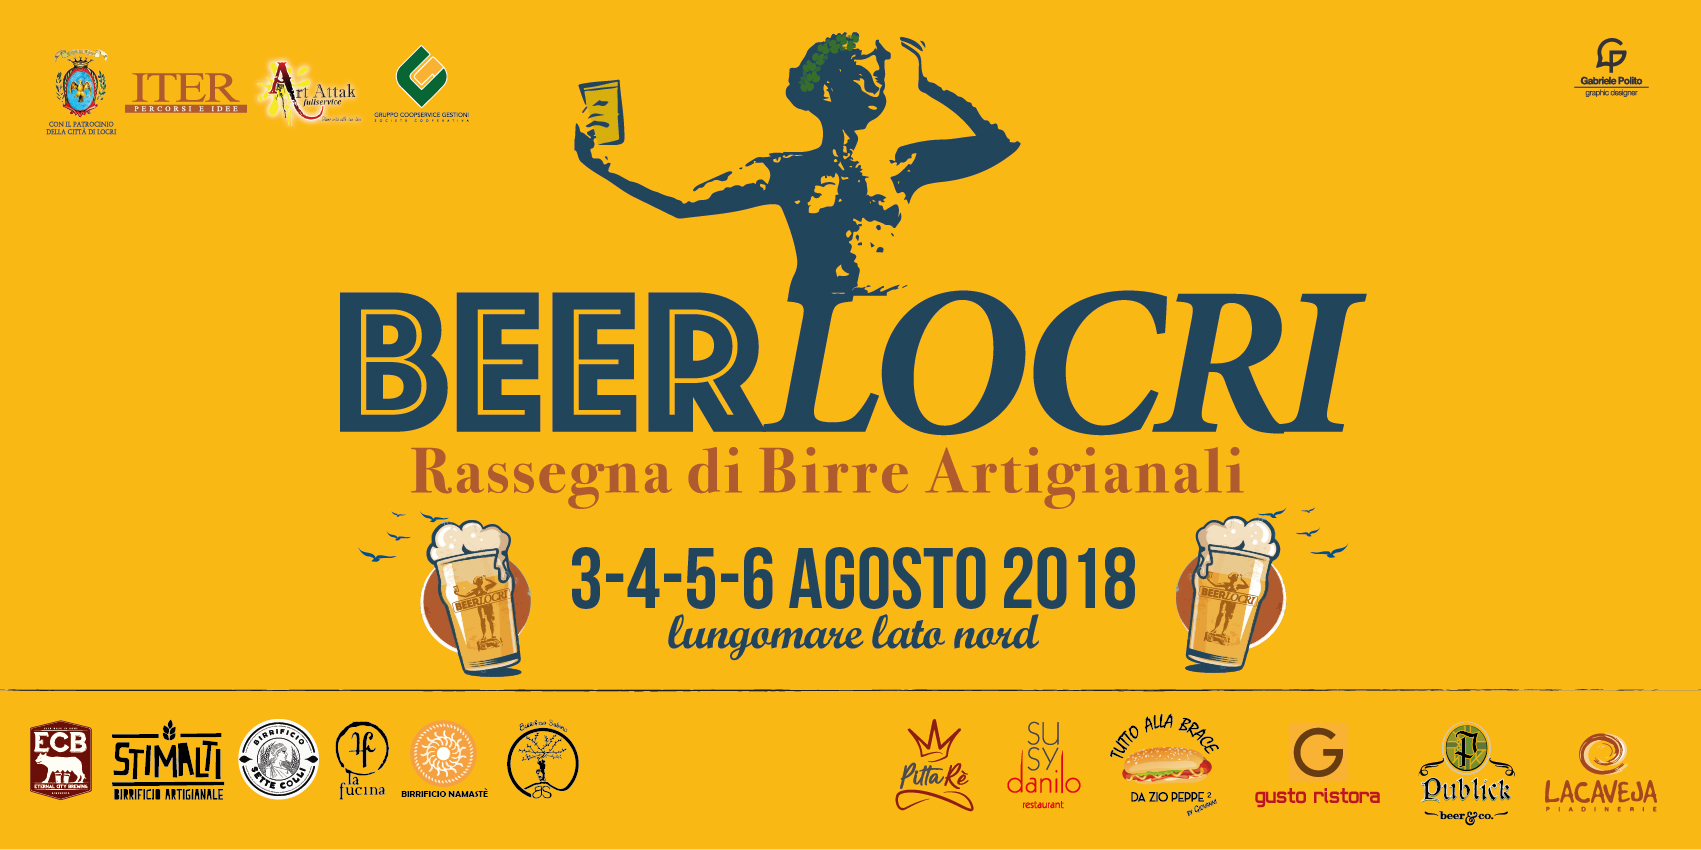 6 Birrifici, 5 regioni italiane: tutto pronto per BeerLocri, dal 3 al 6 agosto